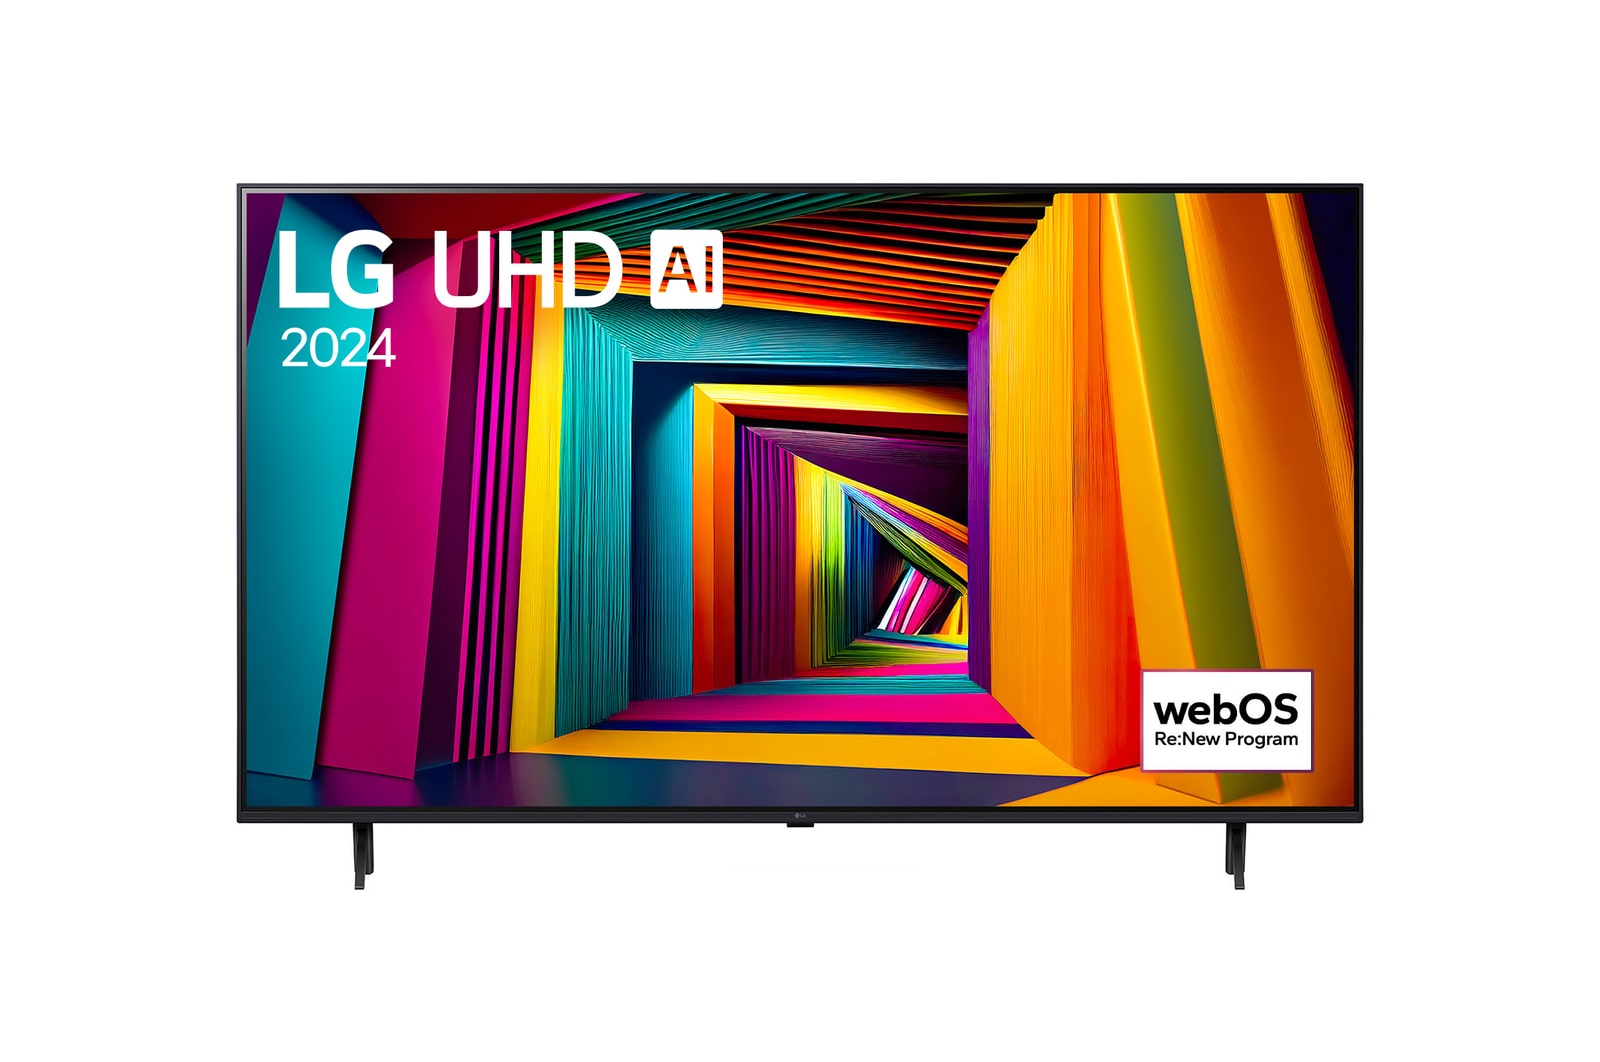 LG 65" LG UHD AI UT91 4K Smart TV 2024, 65UT91006LA